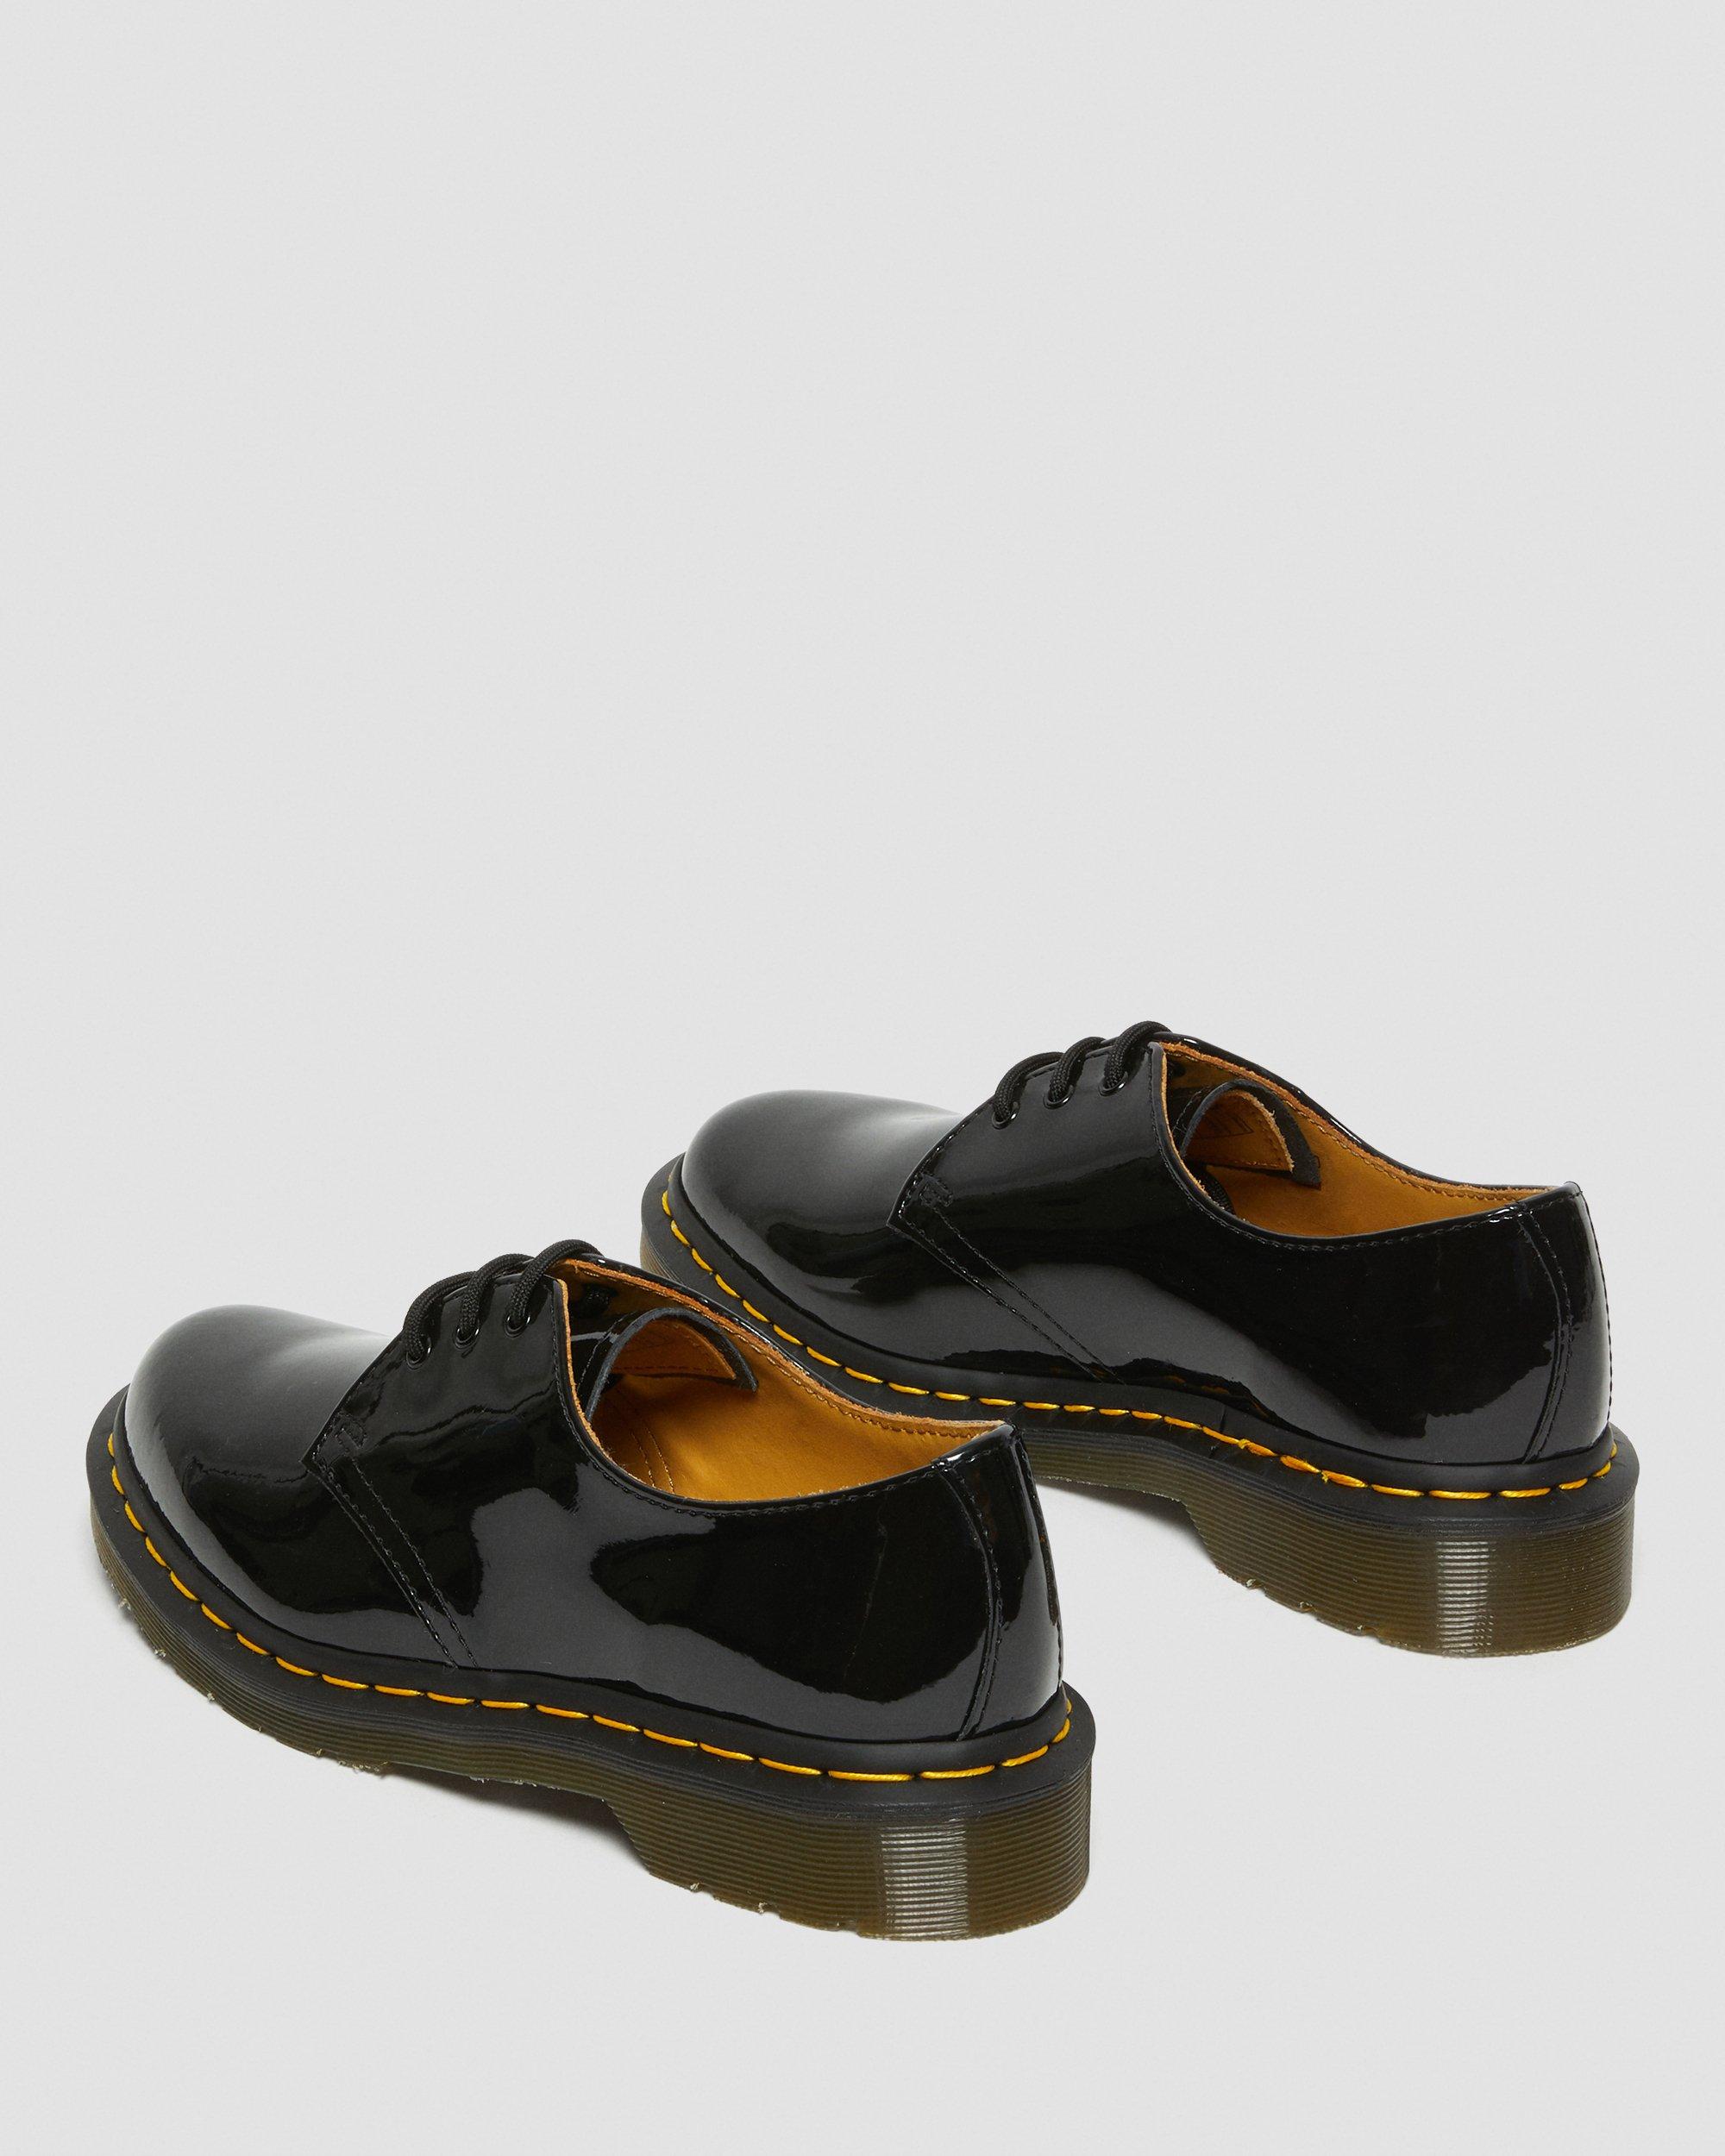 Dr. Martens 1461 Shoes - Black Patent